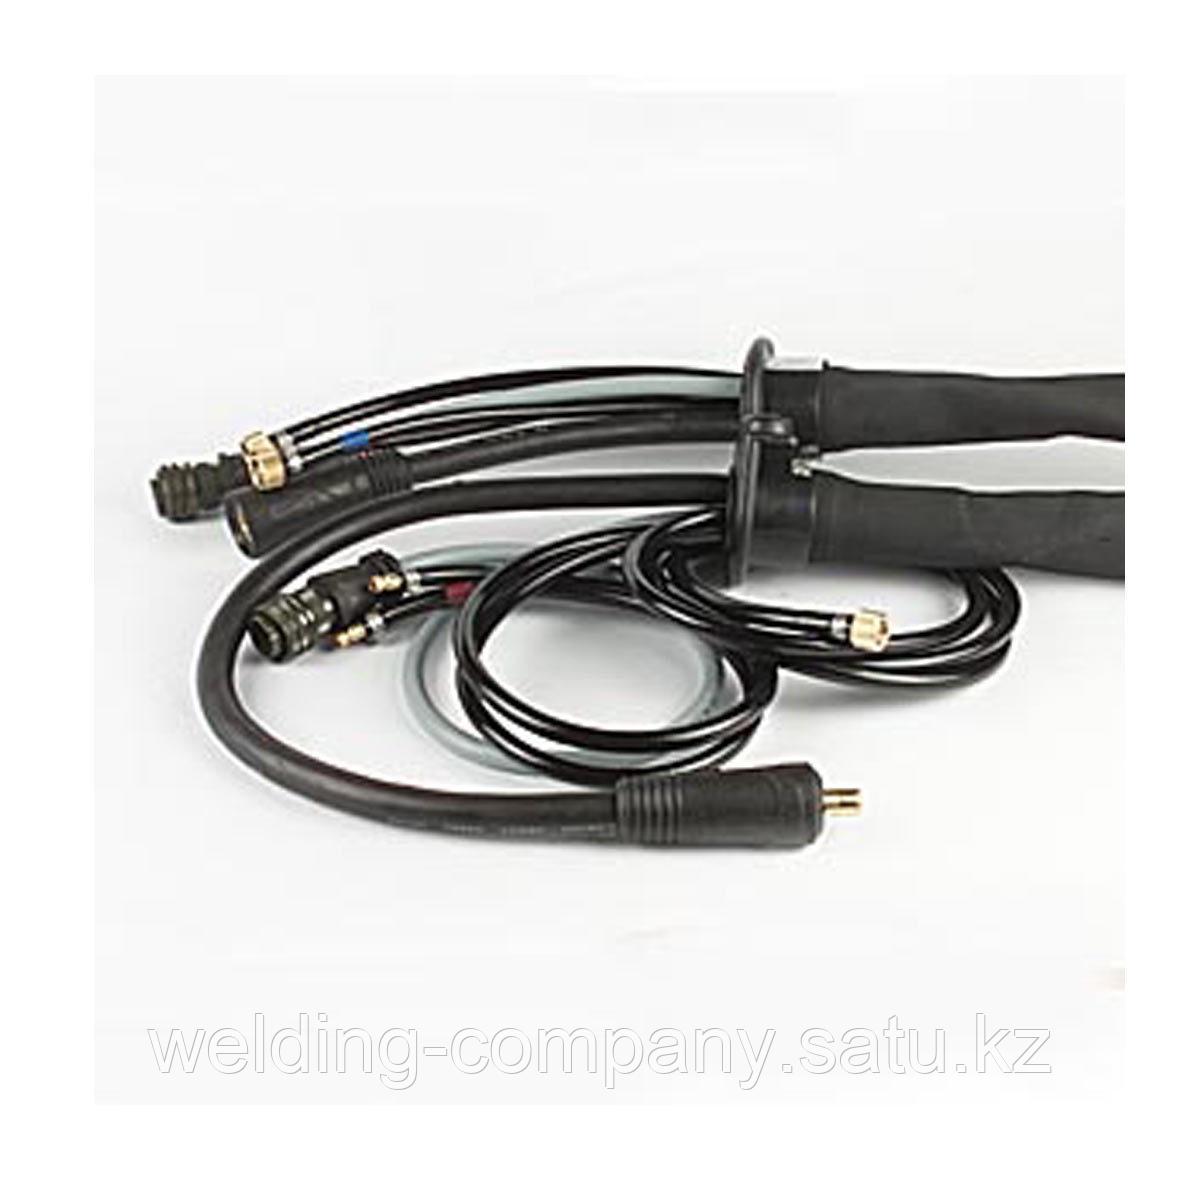 Соединительный кабель HP 95i CON /W/1,2m (Артикул 4,047,846)